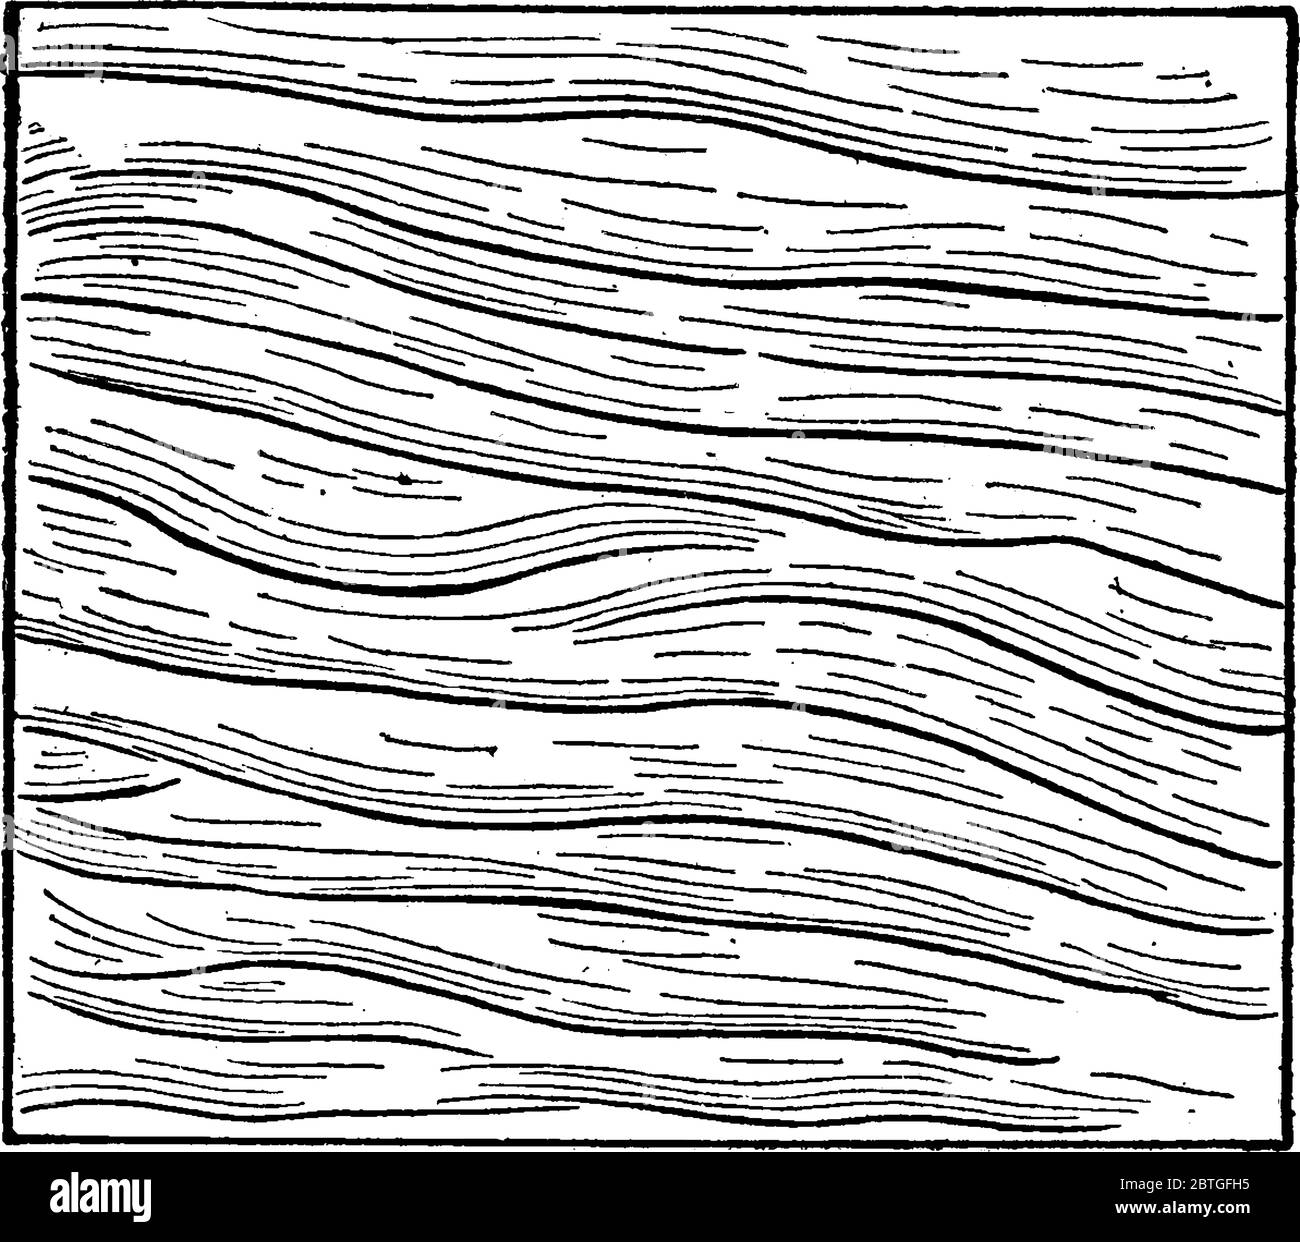 la figure montre des marques d'ondulation sur le sable, un dessin de ligne vintage ou une illustration de gravure. Illustration de Vecteur